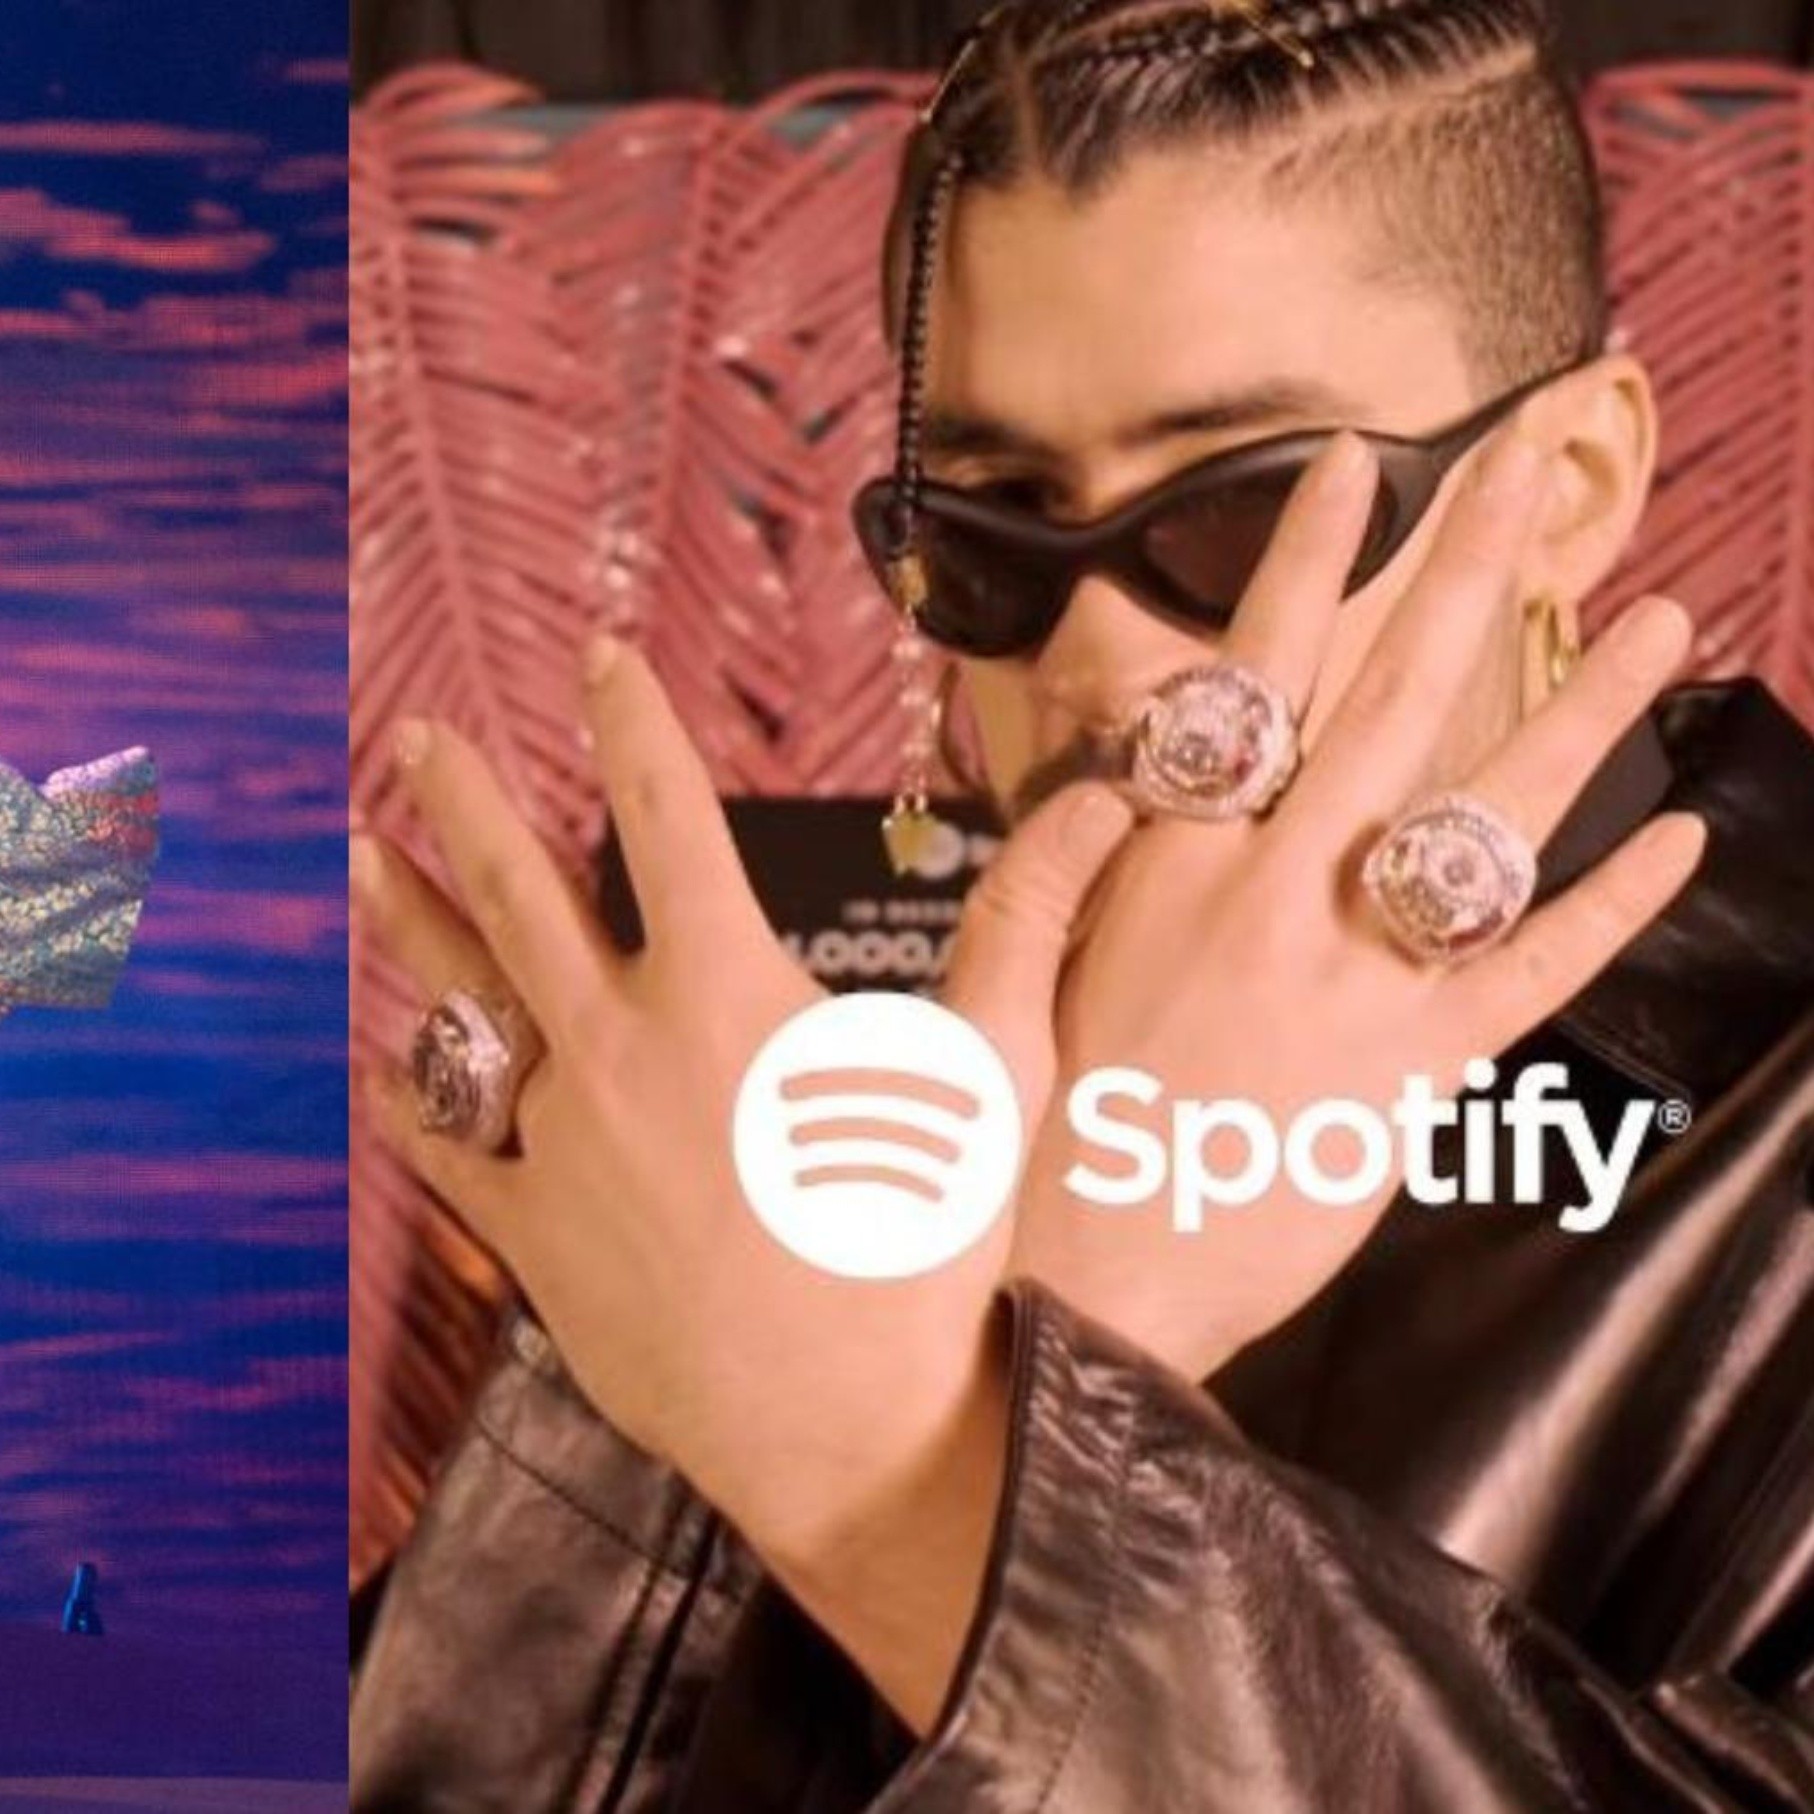 fumar Dato burbuja Bad Bunny recibe anillos de Spotify por ser el artista #1 global por 3 años  consecutivos | Hombres 100 Entretenimiento / Bellezas